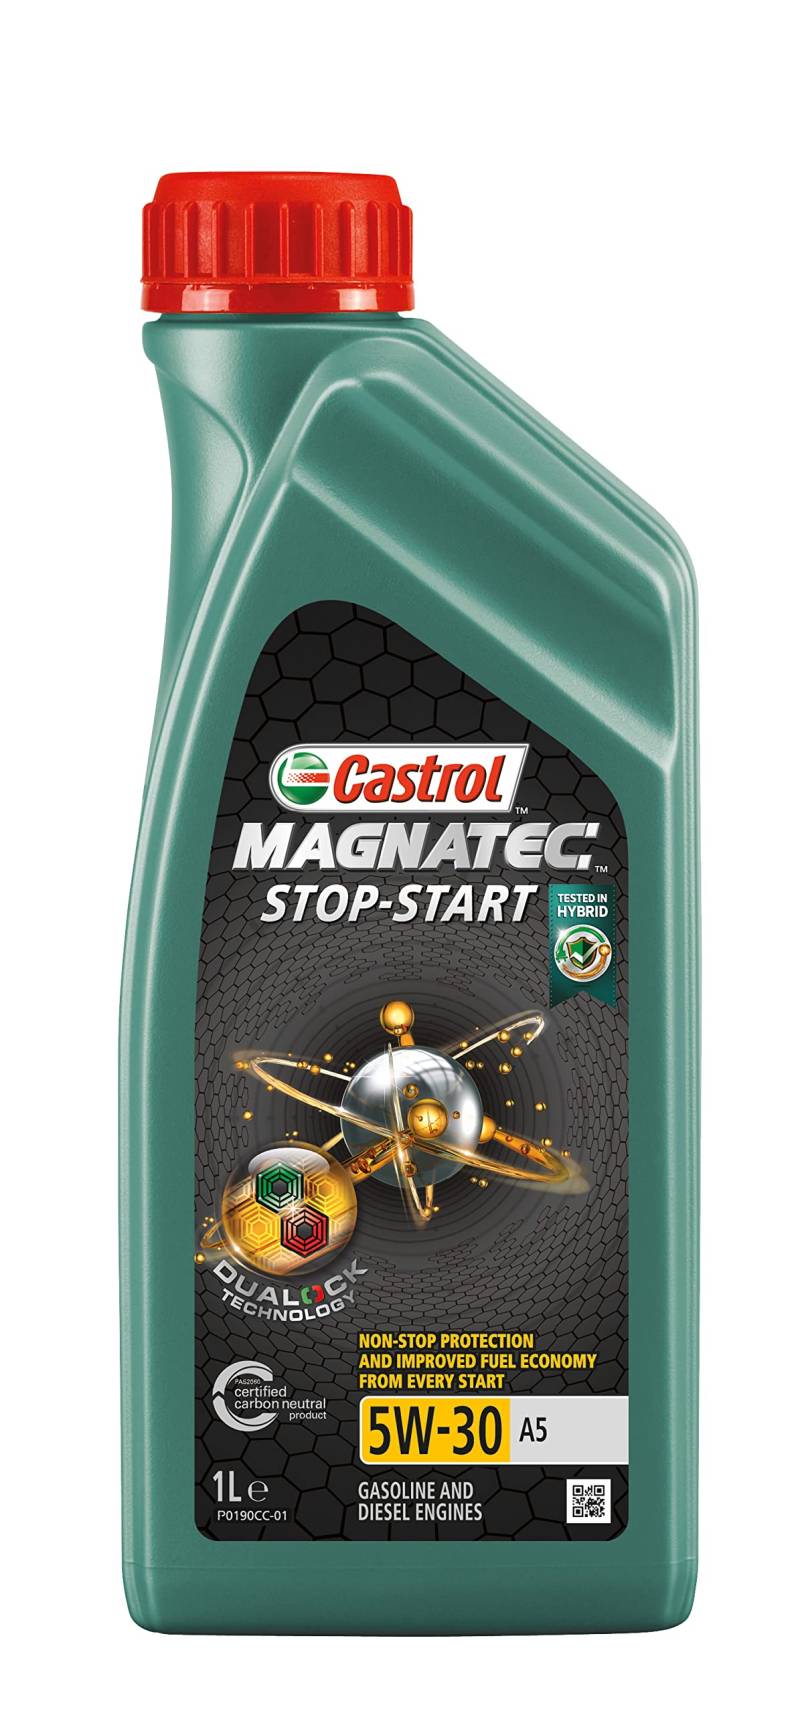 Castrol MAGNATEC 5W-30 A5 STOP-START Motorenöl 1L von Castrol